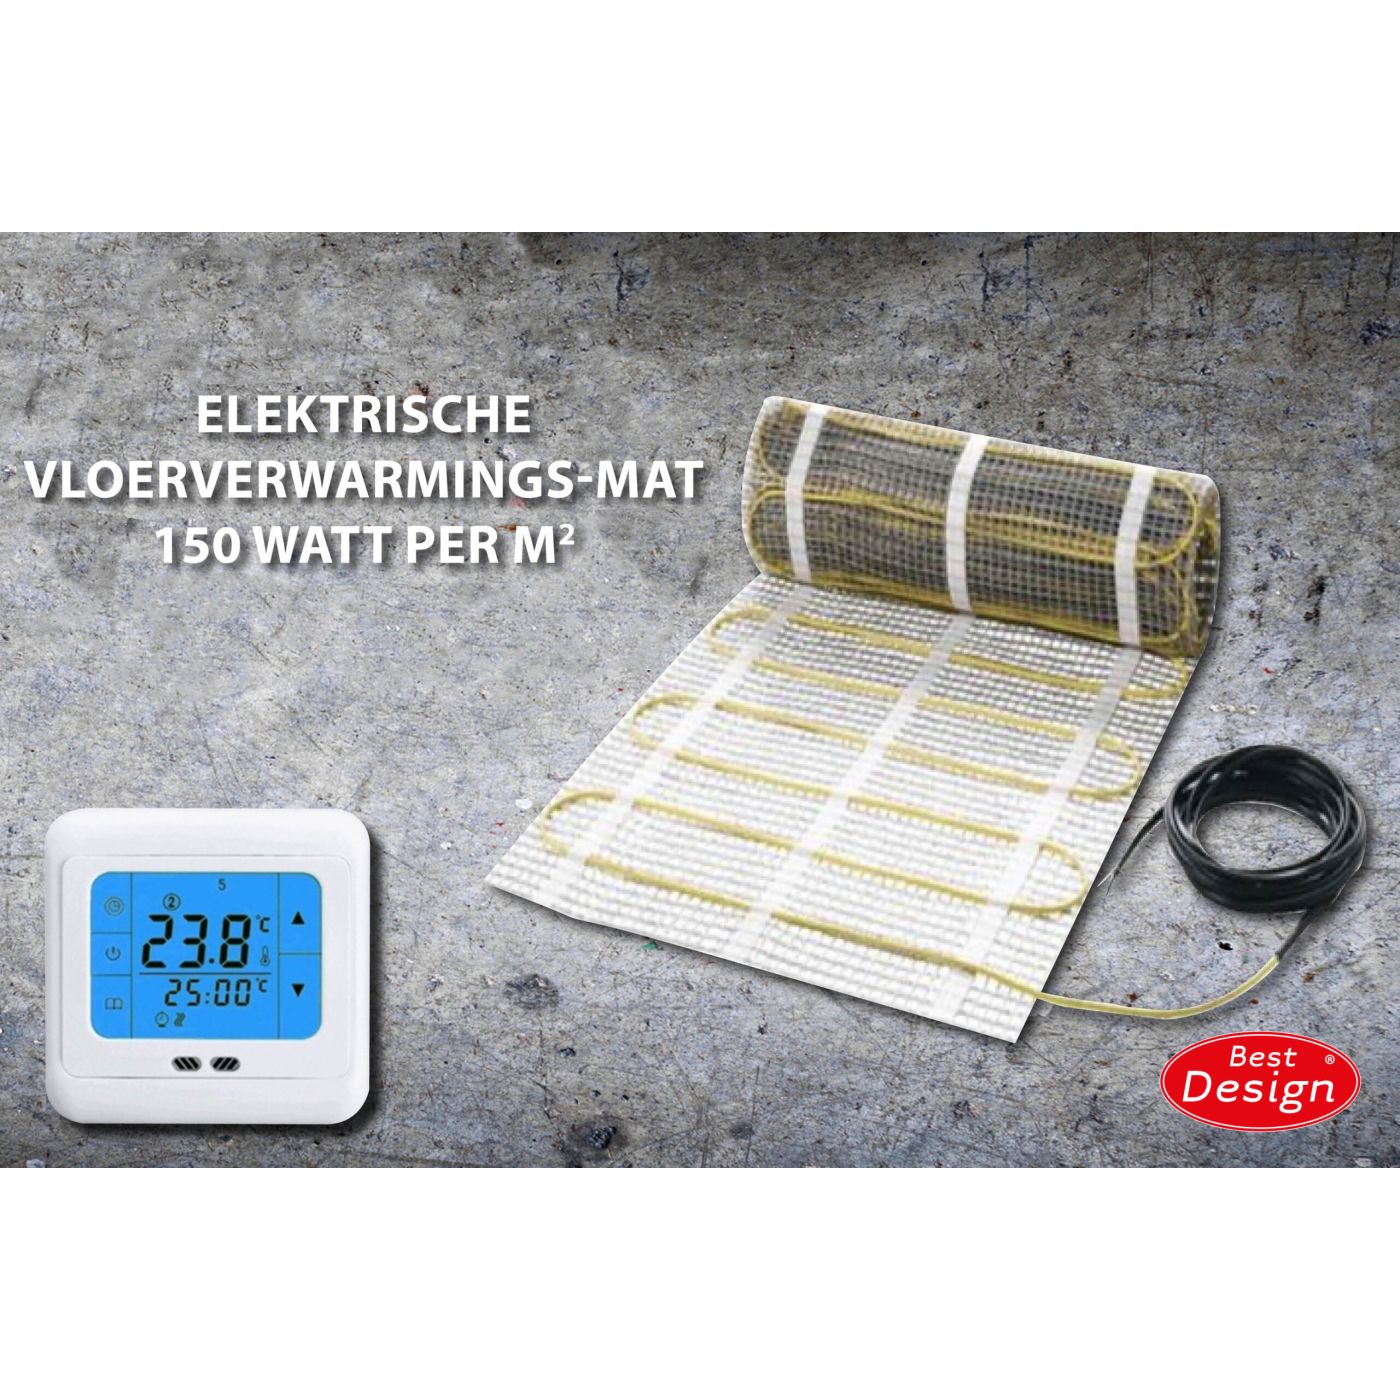 Best Design Comfort elektrische vloerverwarming mat 8.0m2